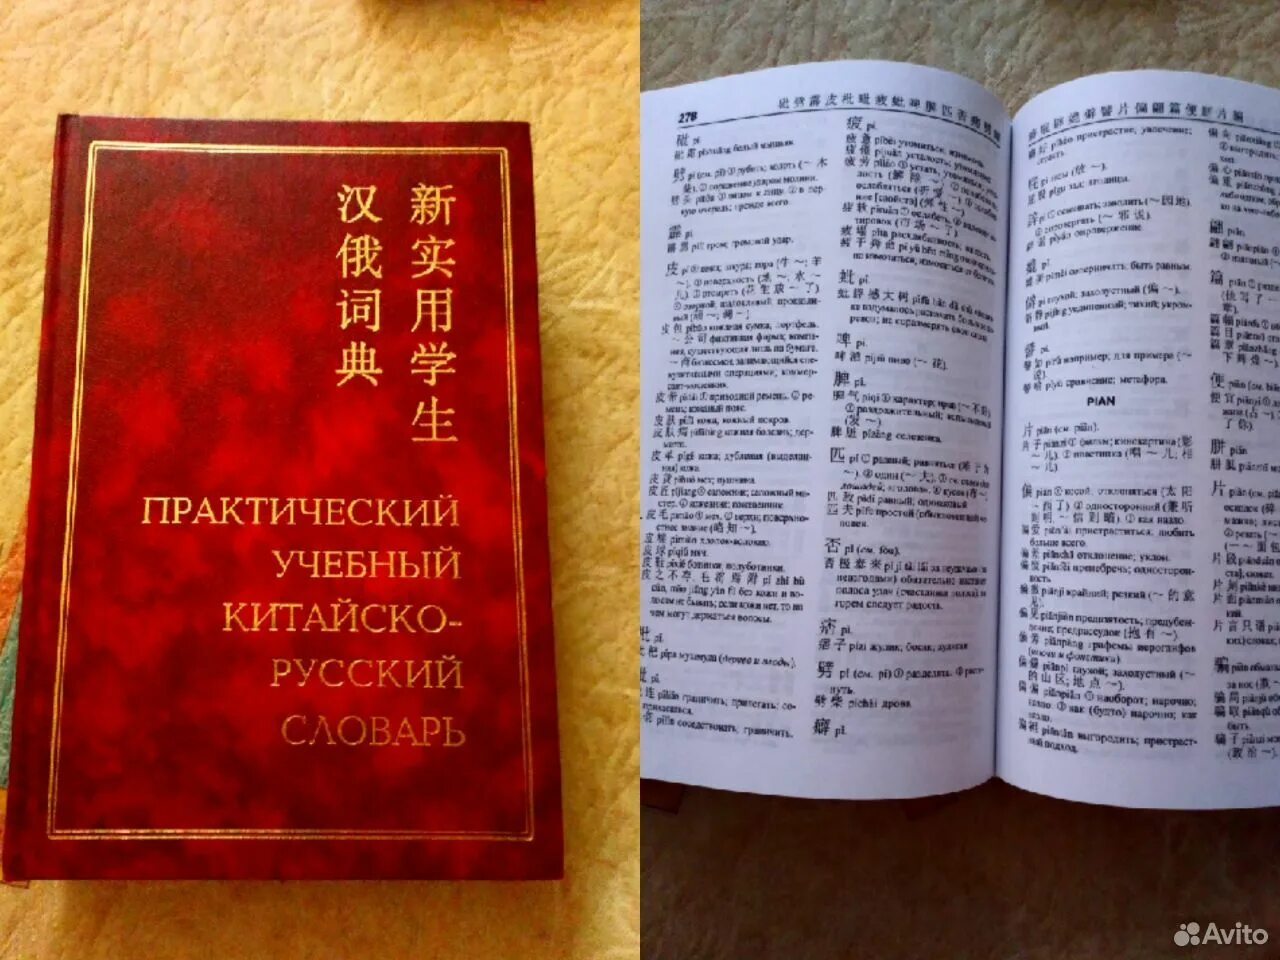 Перевод китайского языка на русский по фото